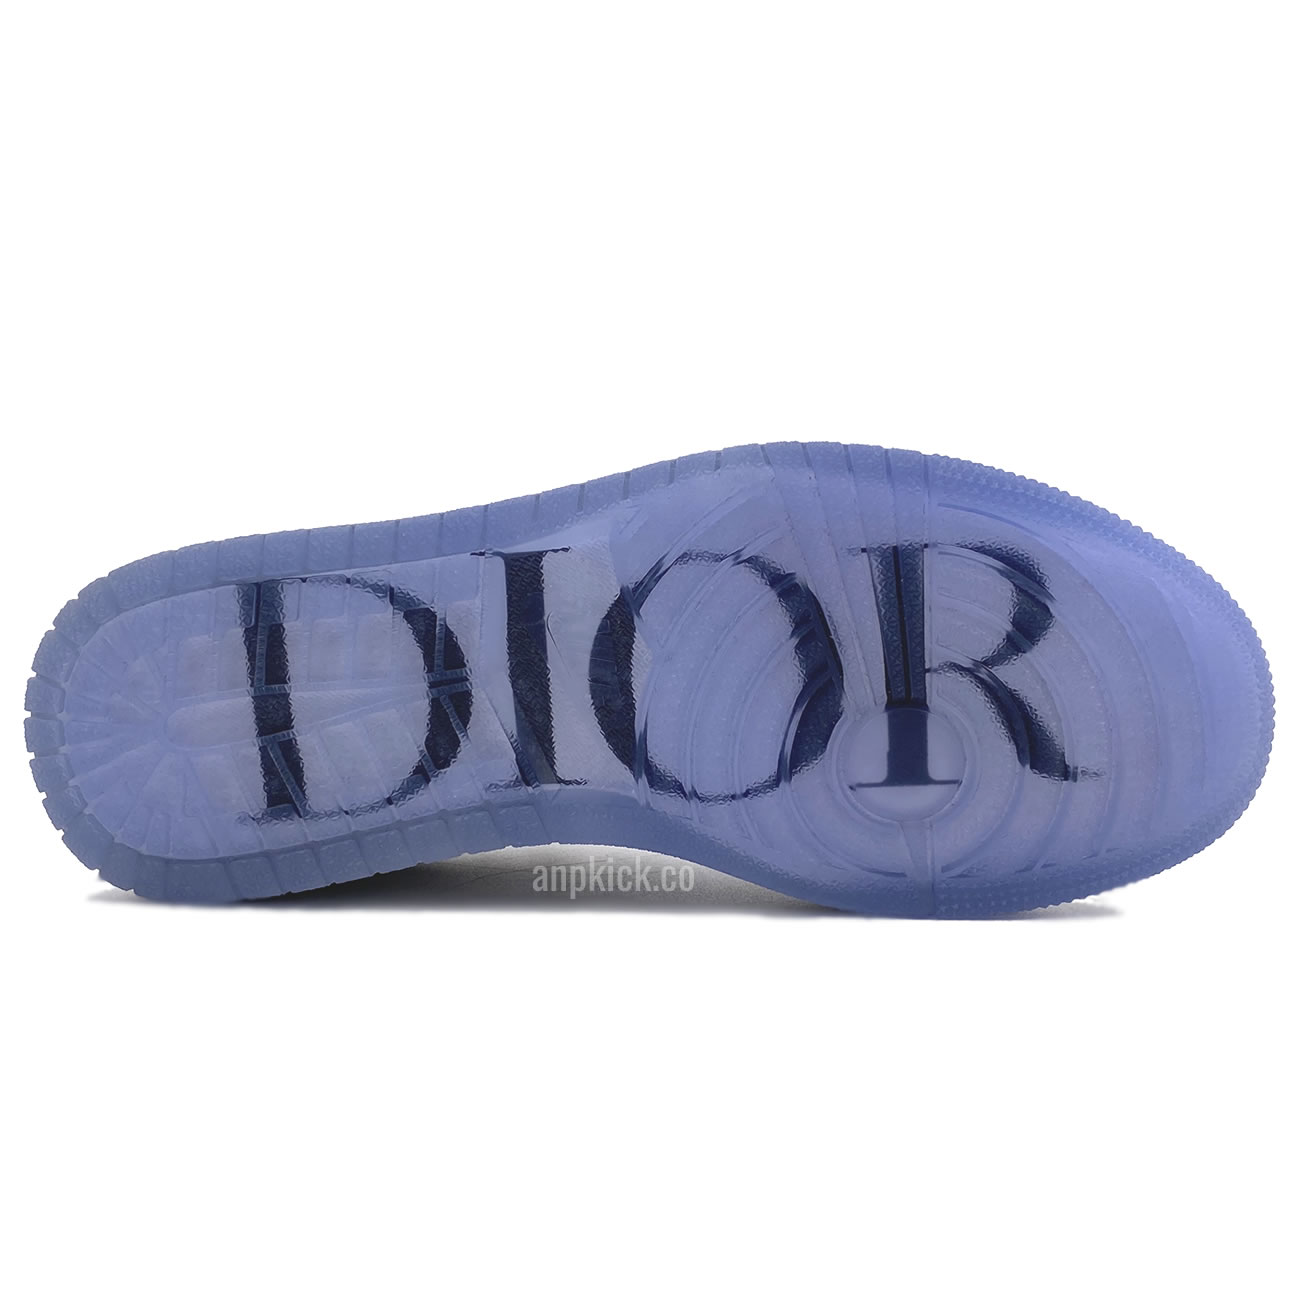 Dior x Air Jordan 1 Low Release Date CN8608-002